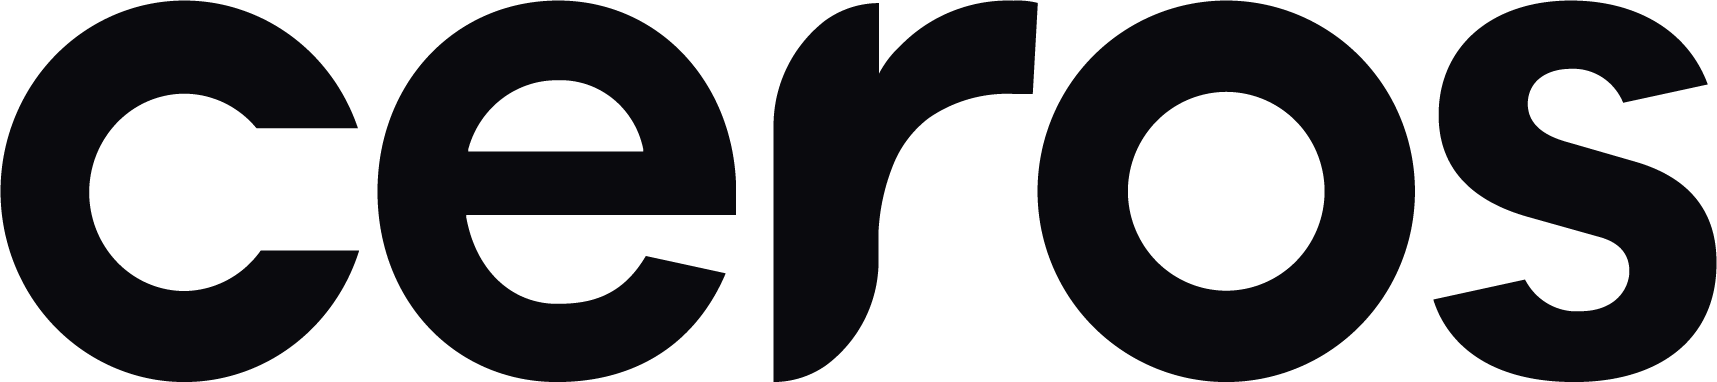 2022-ceros-logo-large-black (1)-1